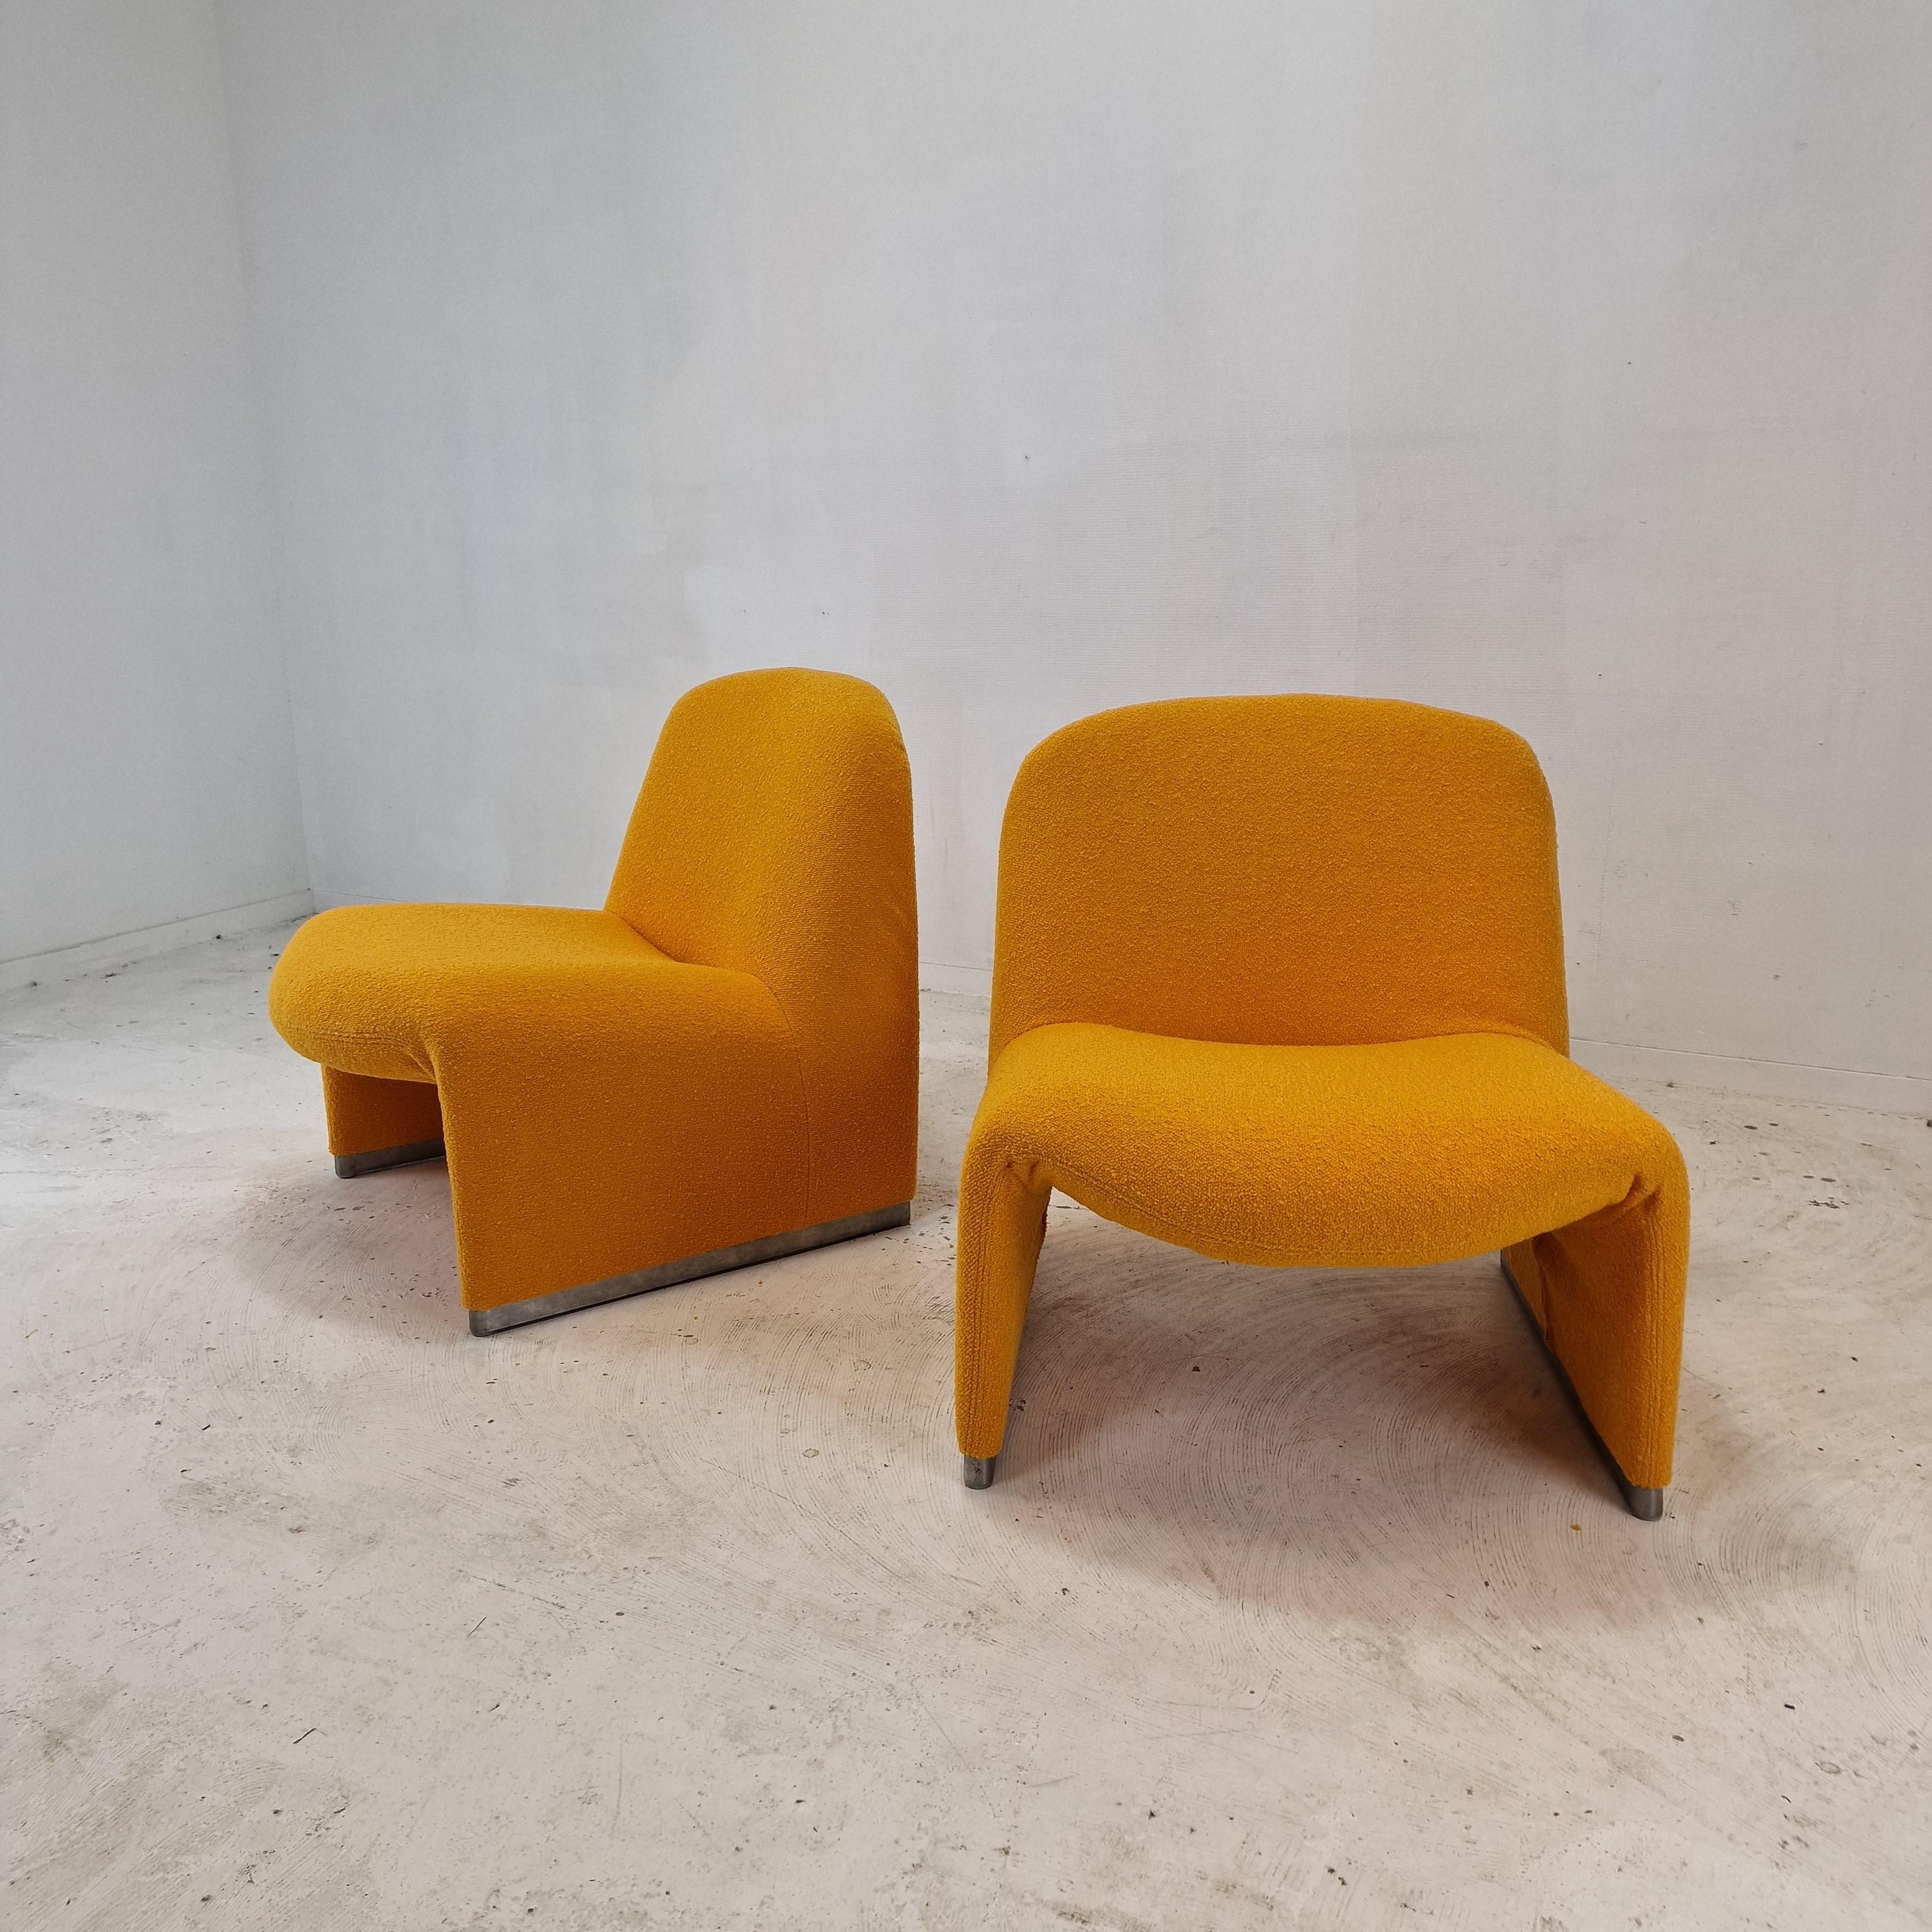 Schöner und bequemer Alky-Stuhl. 
Entworfen von Giancarlo Piretti im Jahr 1969, hergestellt von Artifort. 

Es sind 3 Stühle vorhanden, der Preis gilt für 1 Stuhl.
Sie sind gerade mit einem sehr gemütlichen Wollstoff in einem wunderschönen Orange